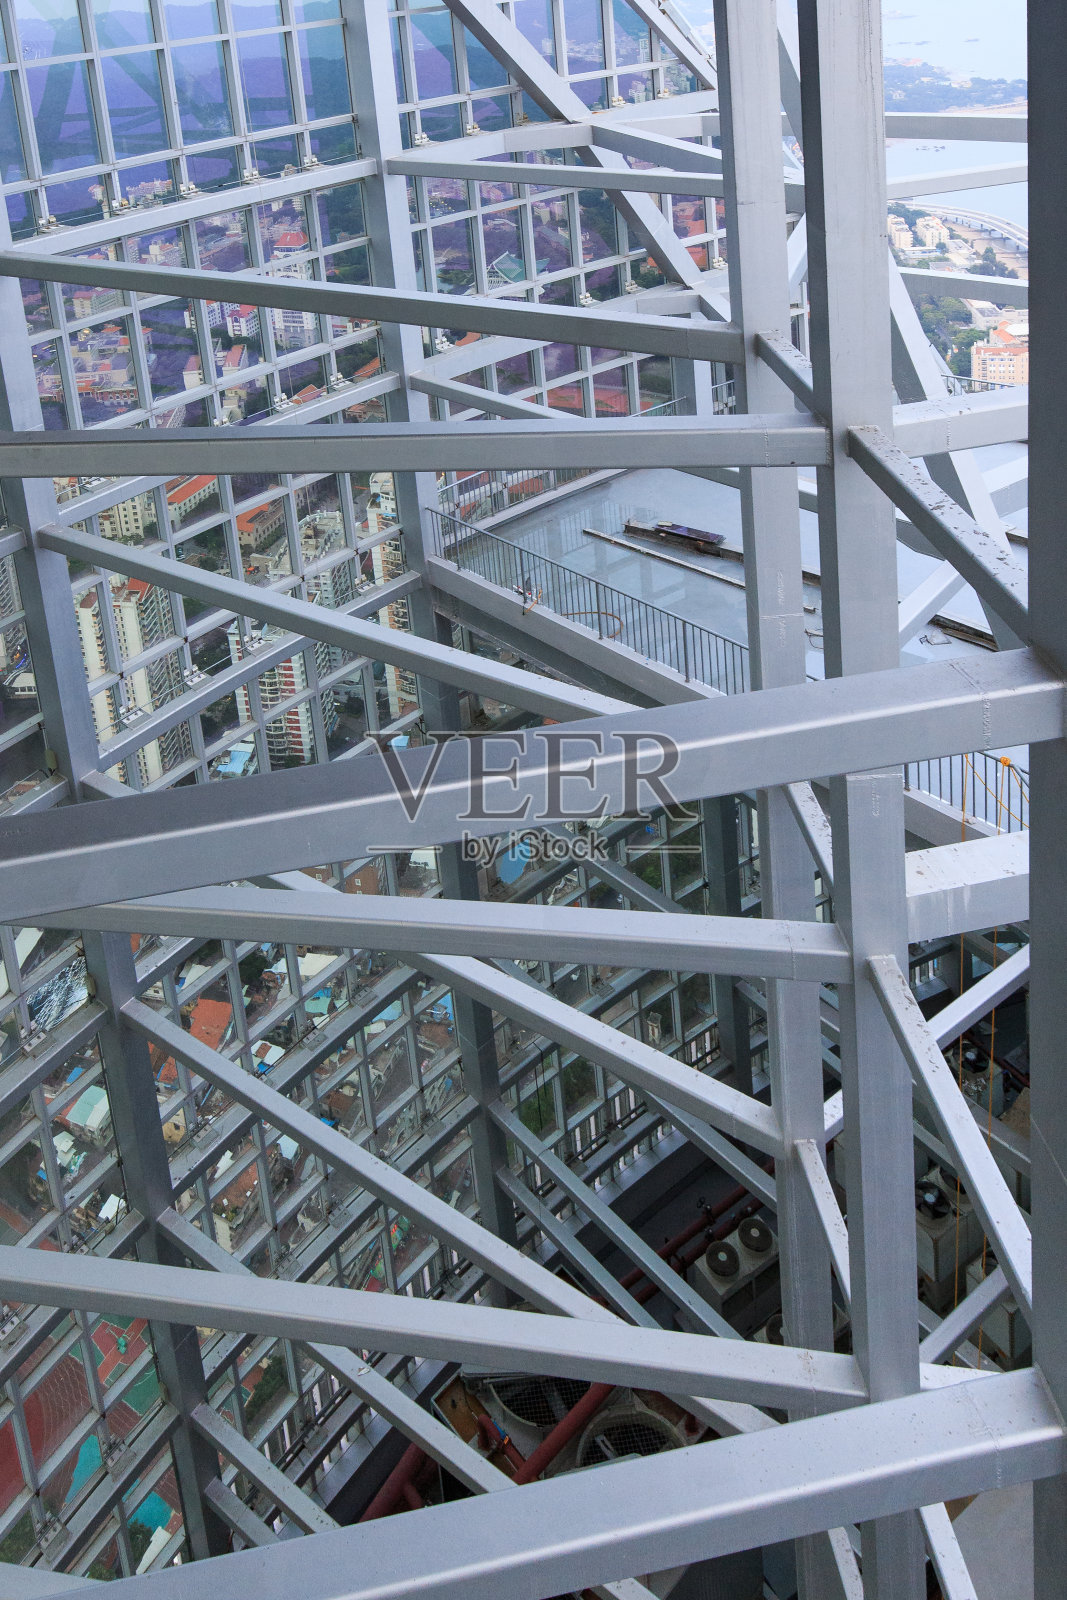 厦门世茂海峡大厦双子塔顶层内部结构照片摄影图片